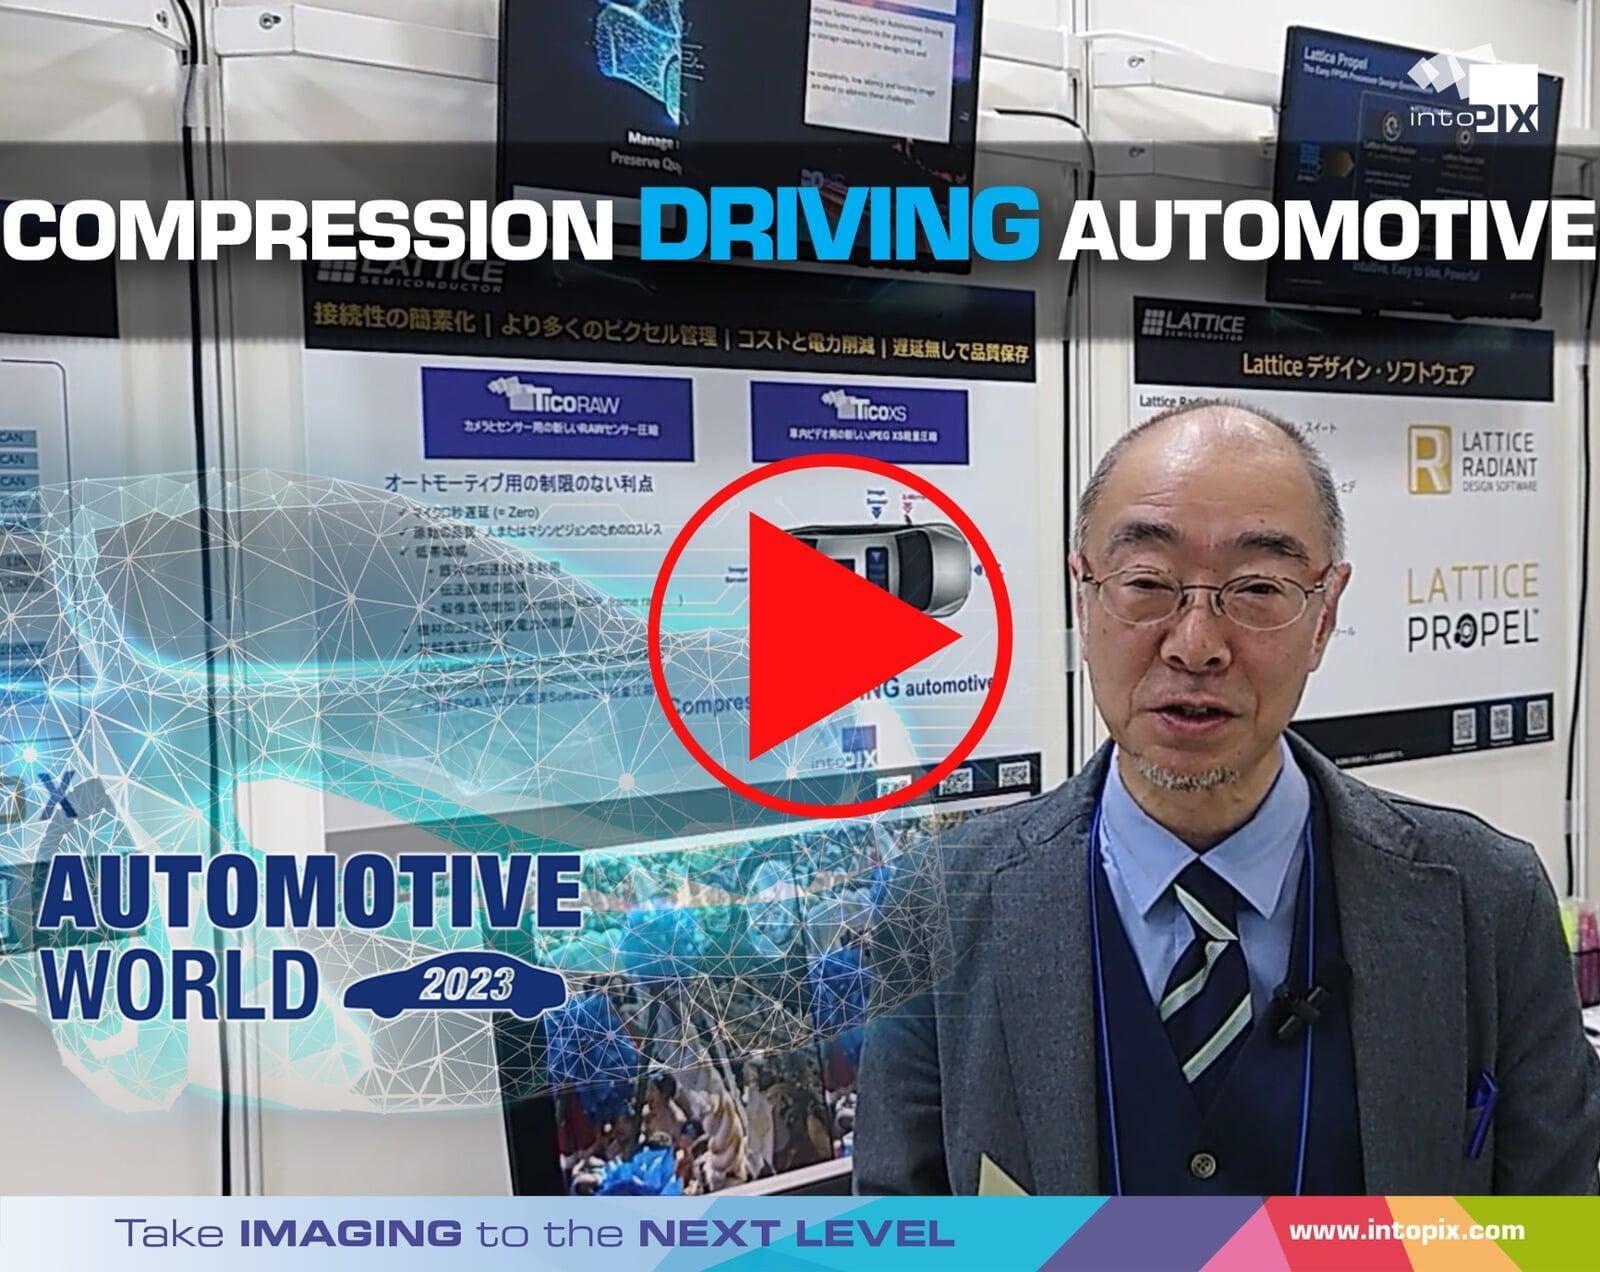 日本2023年汽车世界的视频演示：压缩驱动汽车